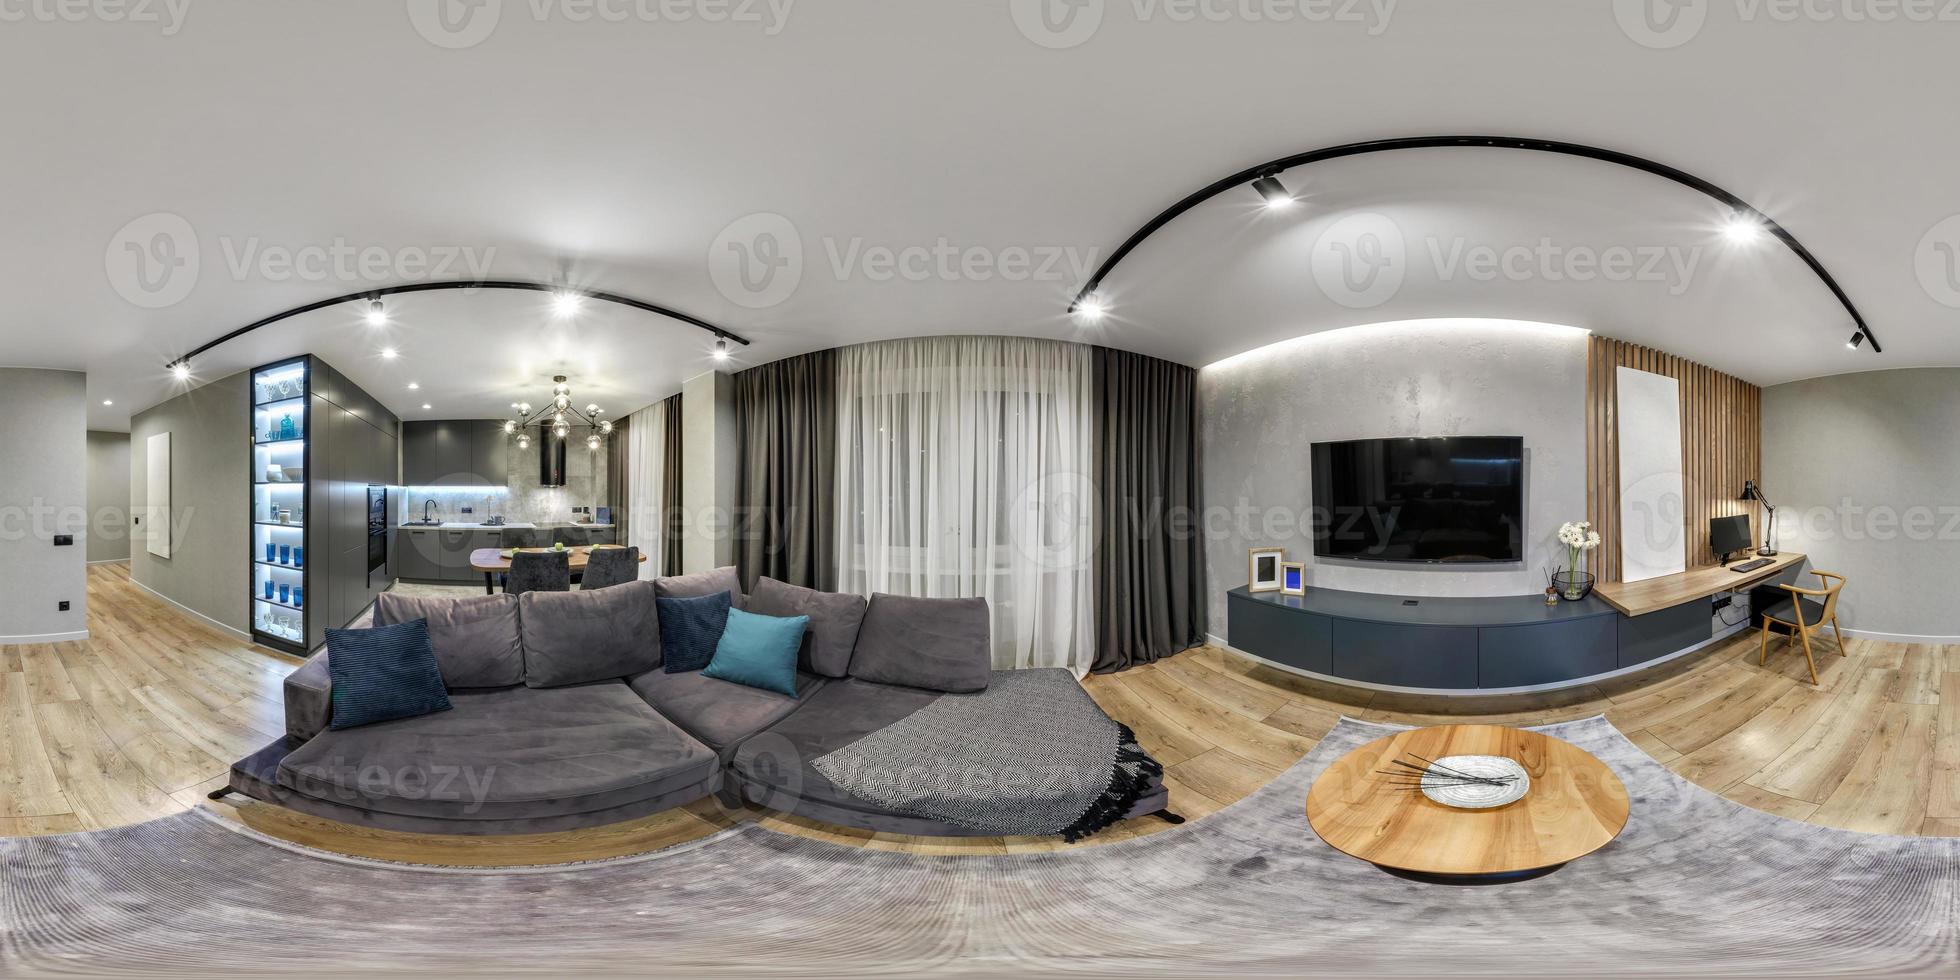 Home interior Design in 360 view